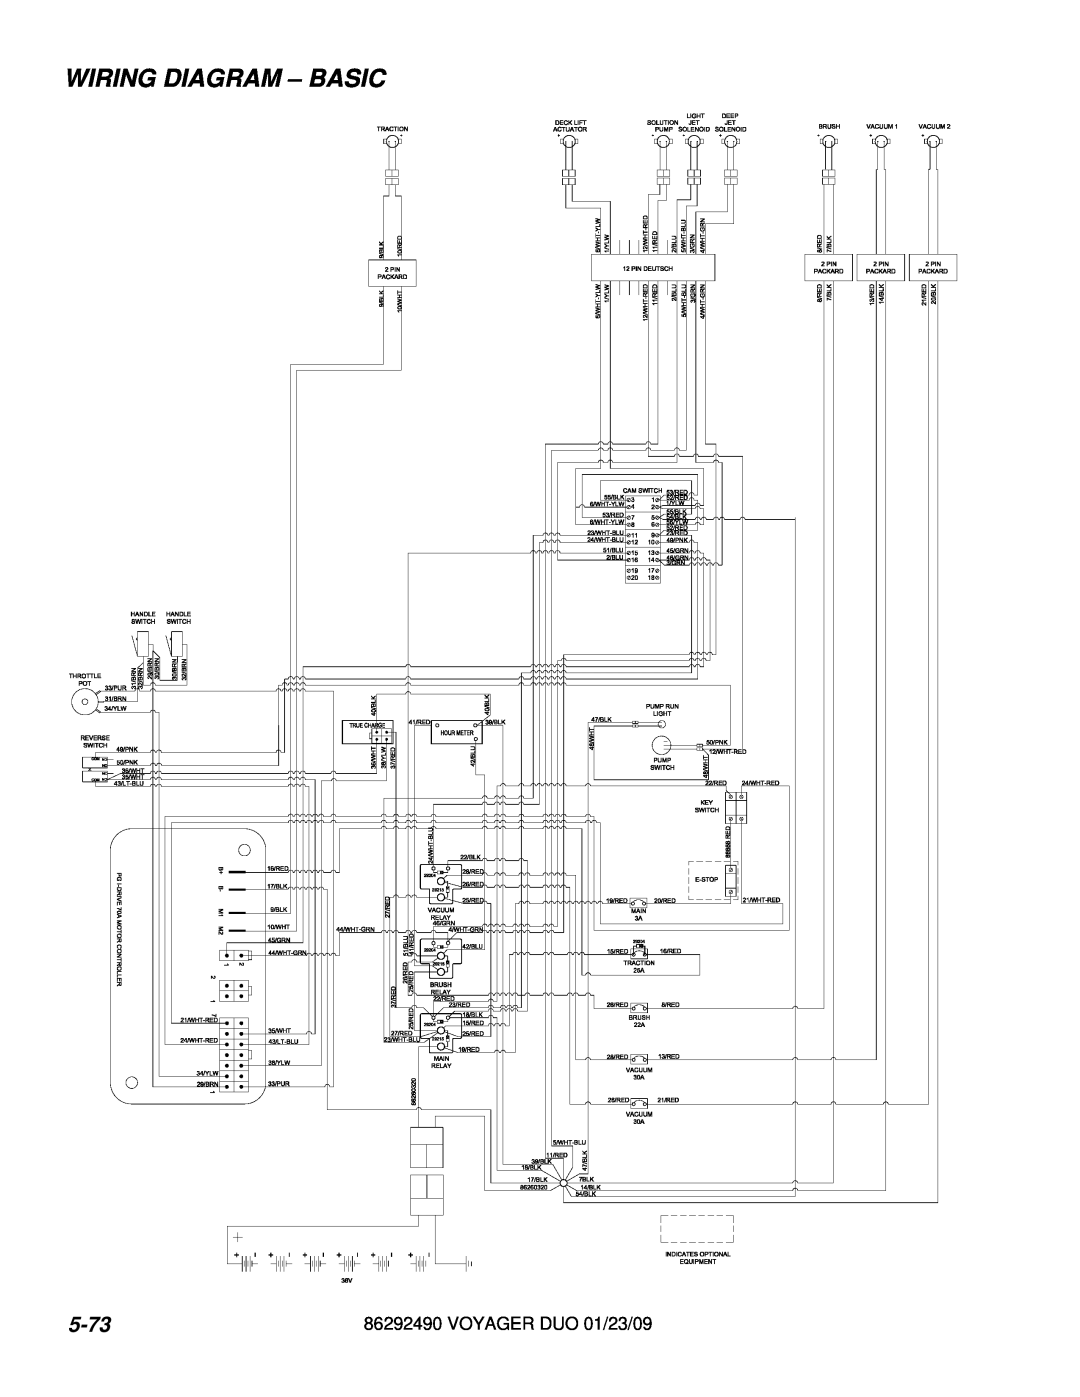 Windsor 10086130, 10086150 manual Wiring Diagram – Basic, 5-73, VOYAGER DUO 01/23/09 